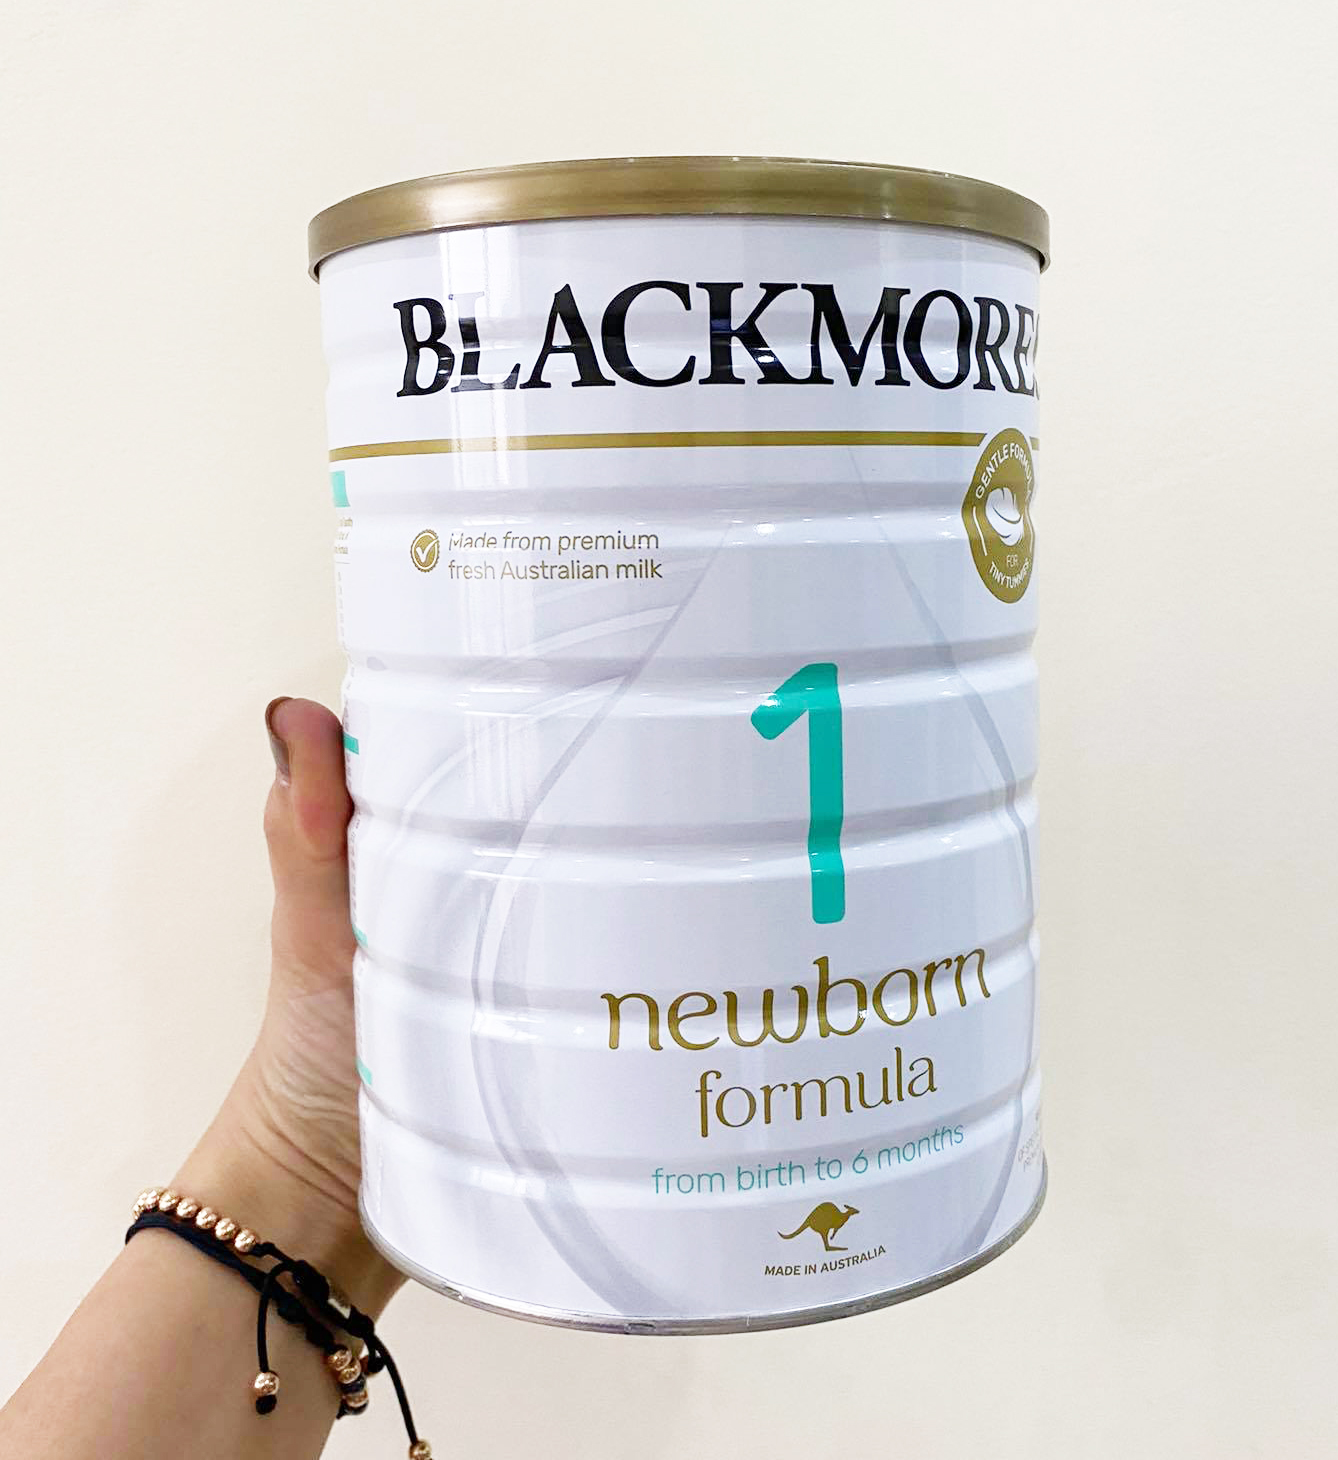 Sữa Blackmores số 1 thực sự có những công dụng gì?